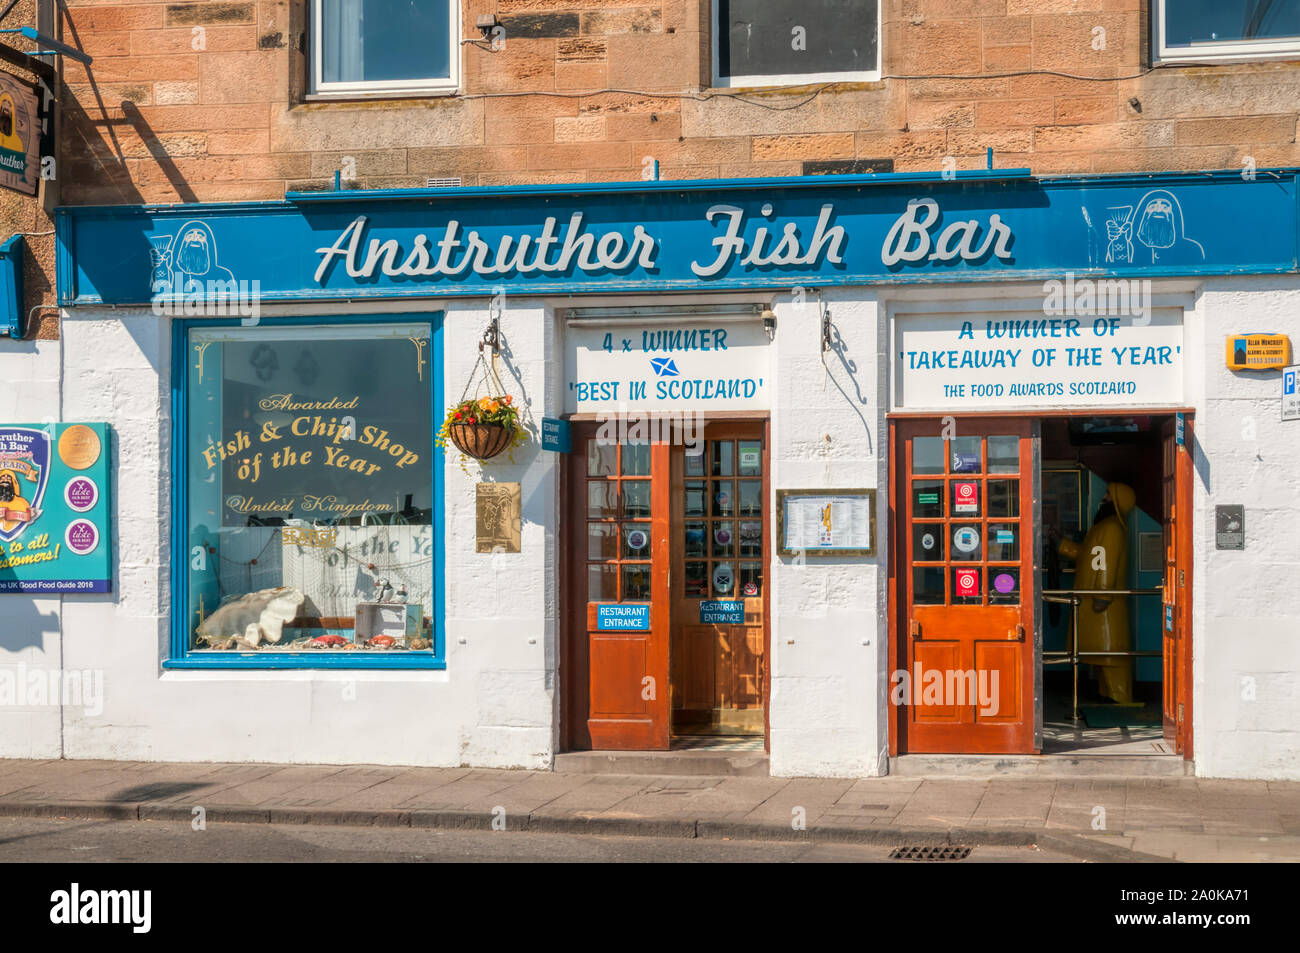 El Anstruther Fish Bar en el East Neuk de Fife, Escocia, fue el Reino Unido Pescadería del Año en 2009. Foto de stock